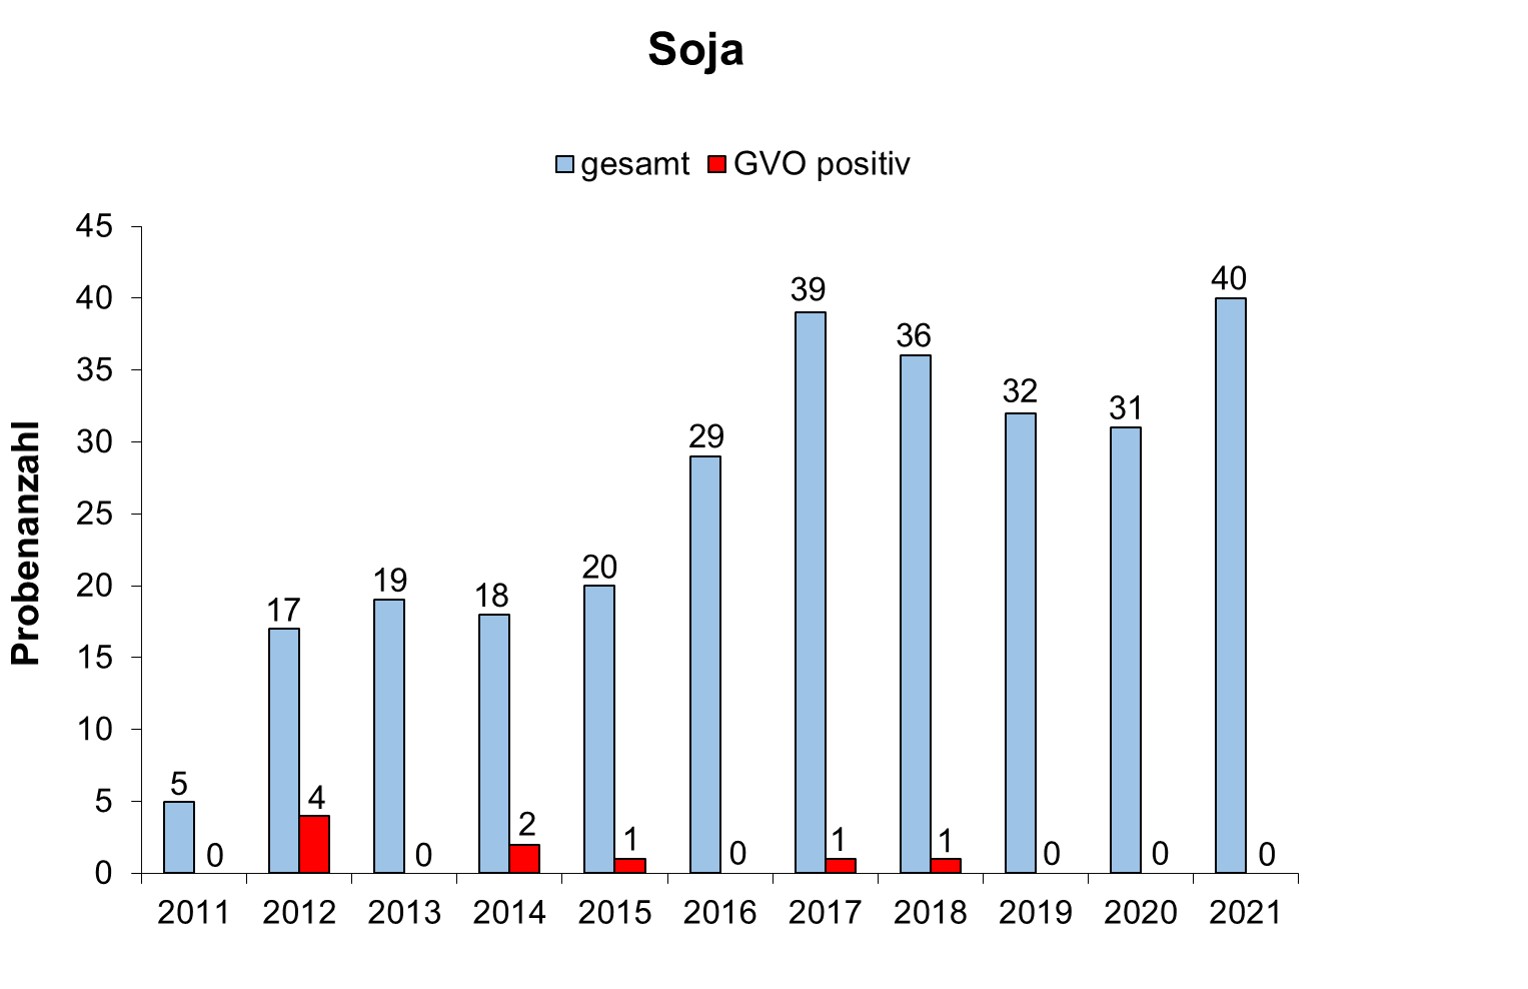 Abbildung 4: Ergebnisse der Saatgutuntersuchungen durch die Bundesländer für Soja (2011 – 2021). Die Angaben beziehen sich auf das jeweilige Analysejahr (01.10. – 30.09.).